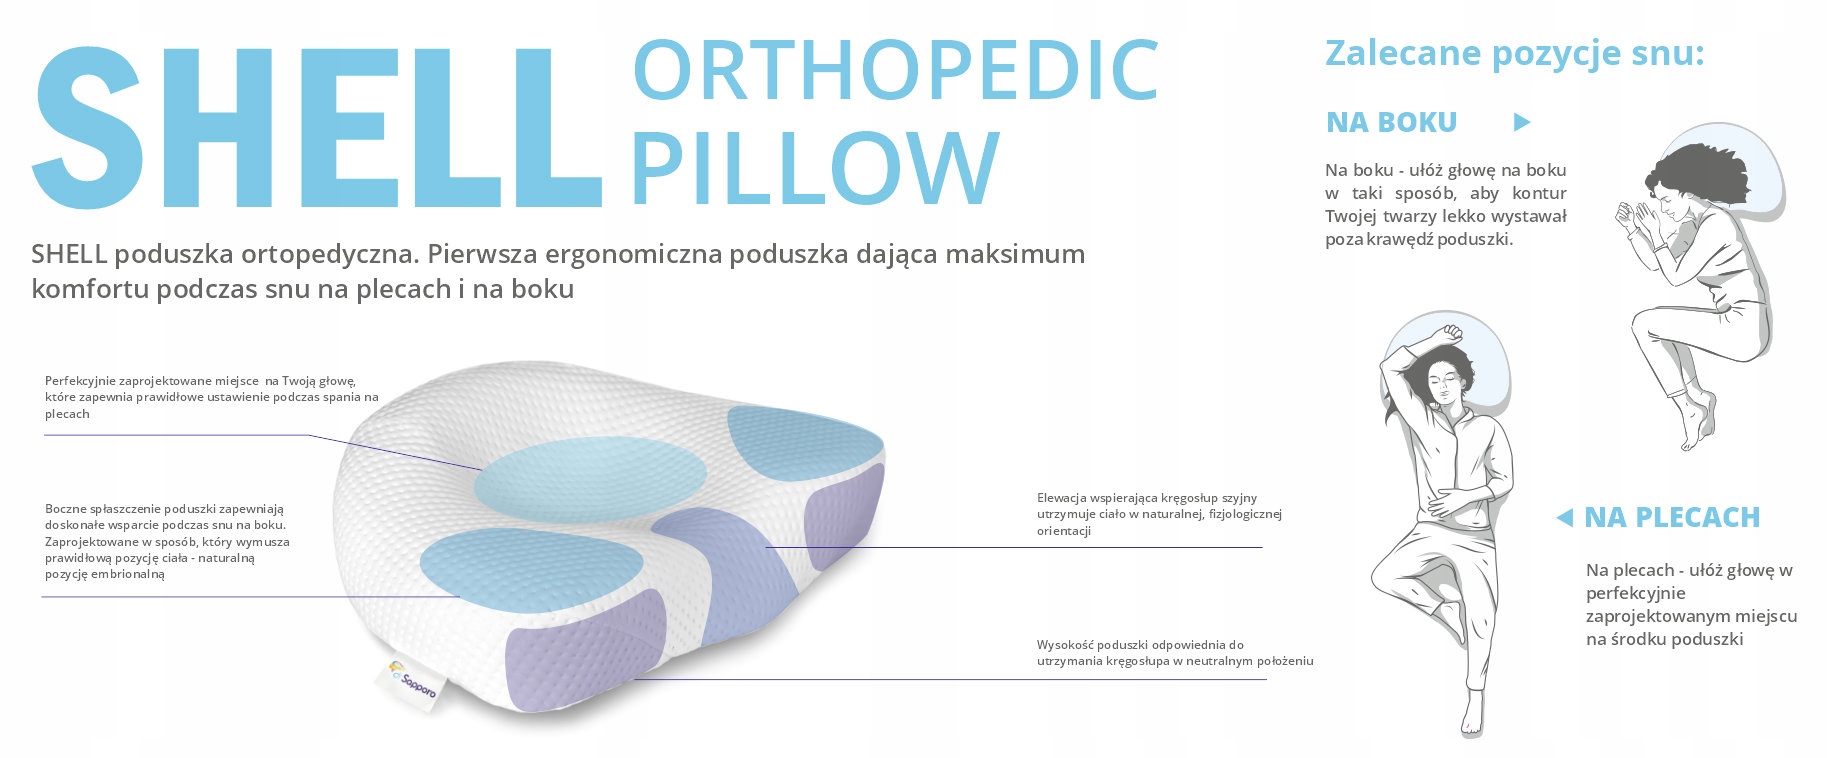 Poduszka ORTOPEDYCZNA do spania SHELL Dr.SAPPORO Wysokość maksymalna 10 cm